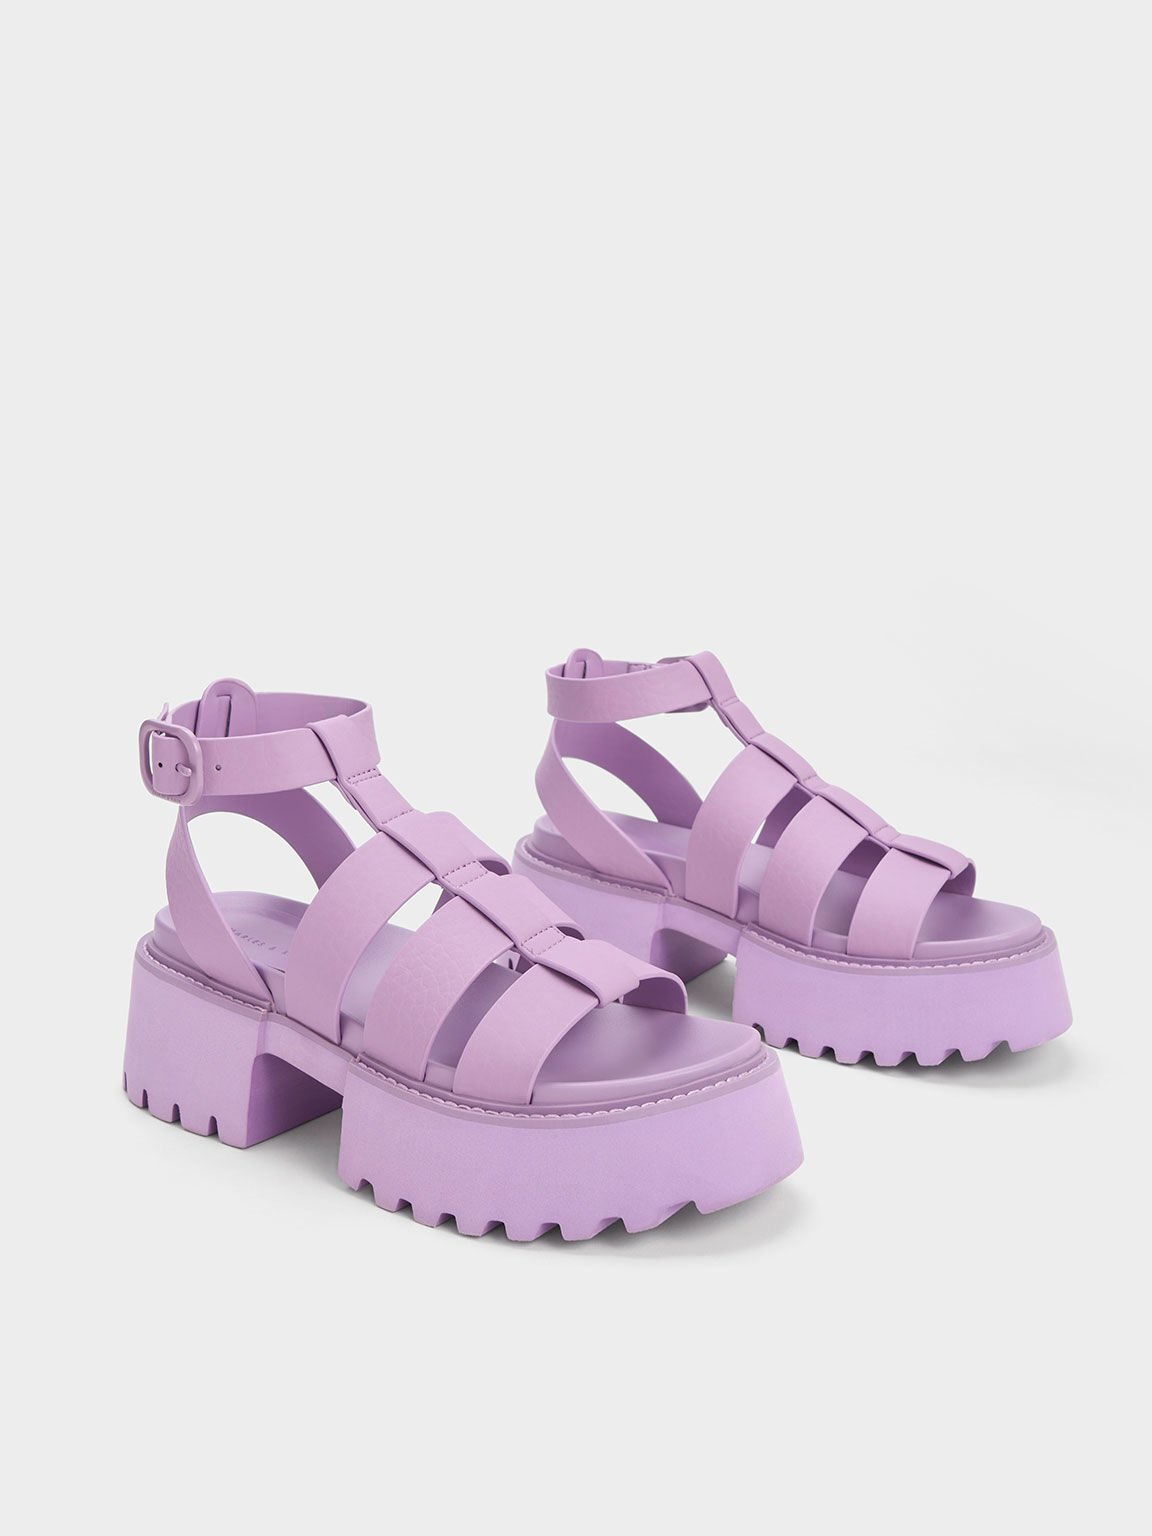 Nadine 厚底羅馬涼鞋, 紫丁香色, hi-res